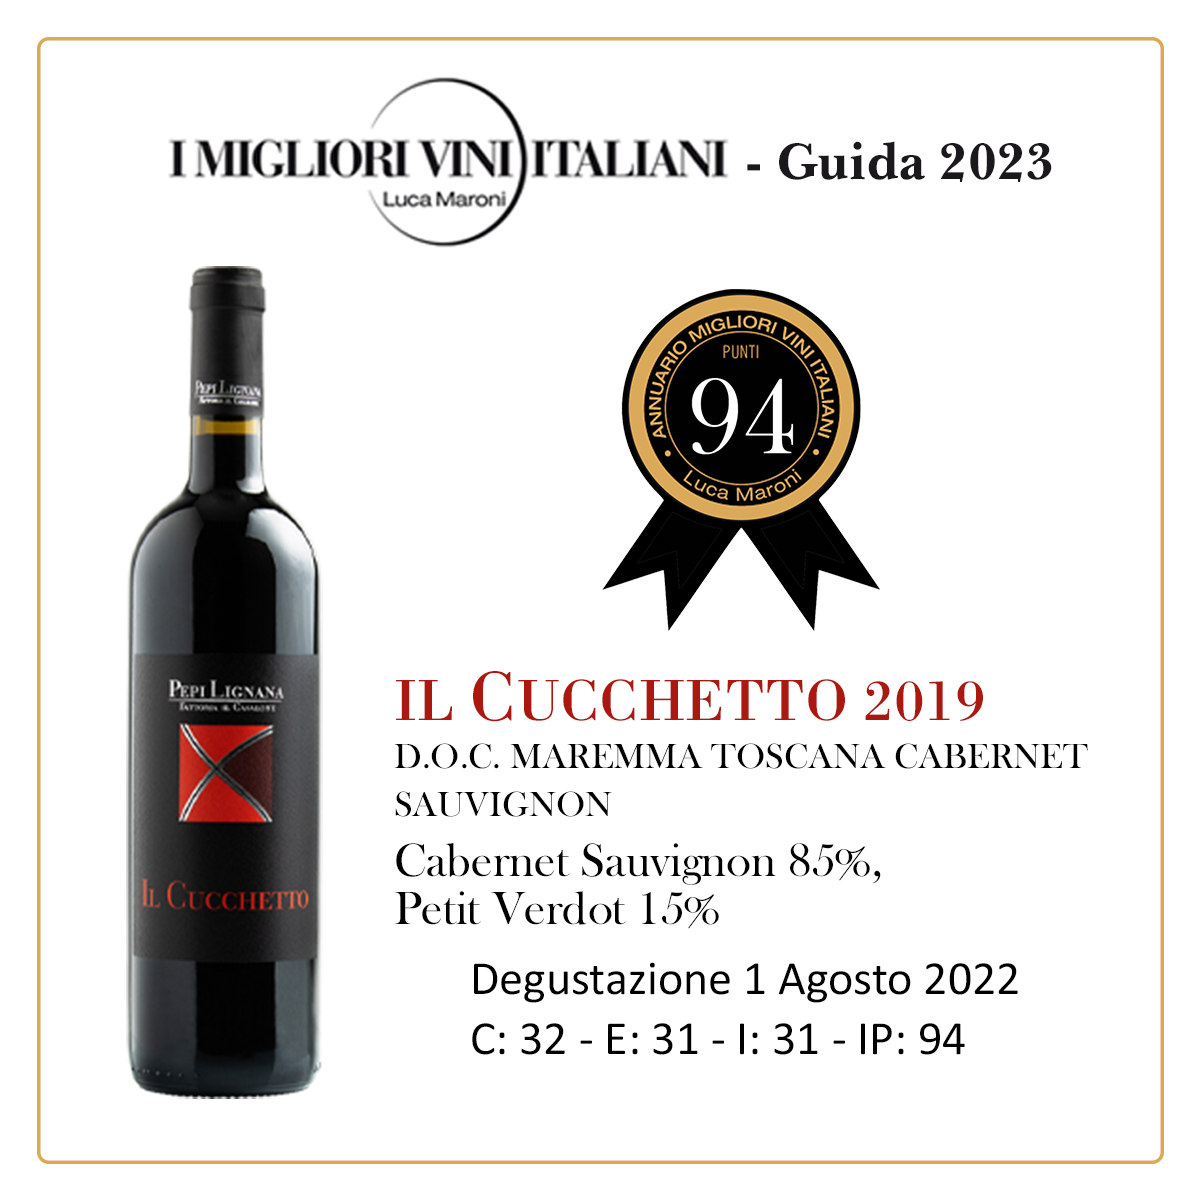 Luca Maroni Annuario Migliori Vini Guida 2023 Il Cucchetto Pepi Lignana Wine